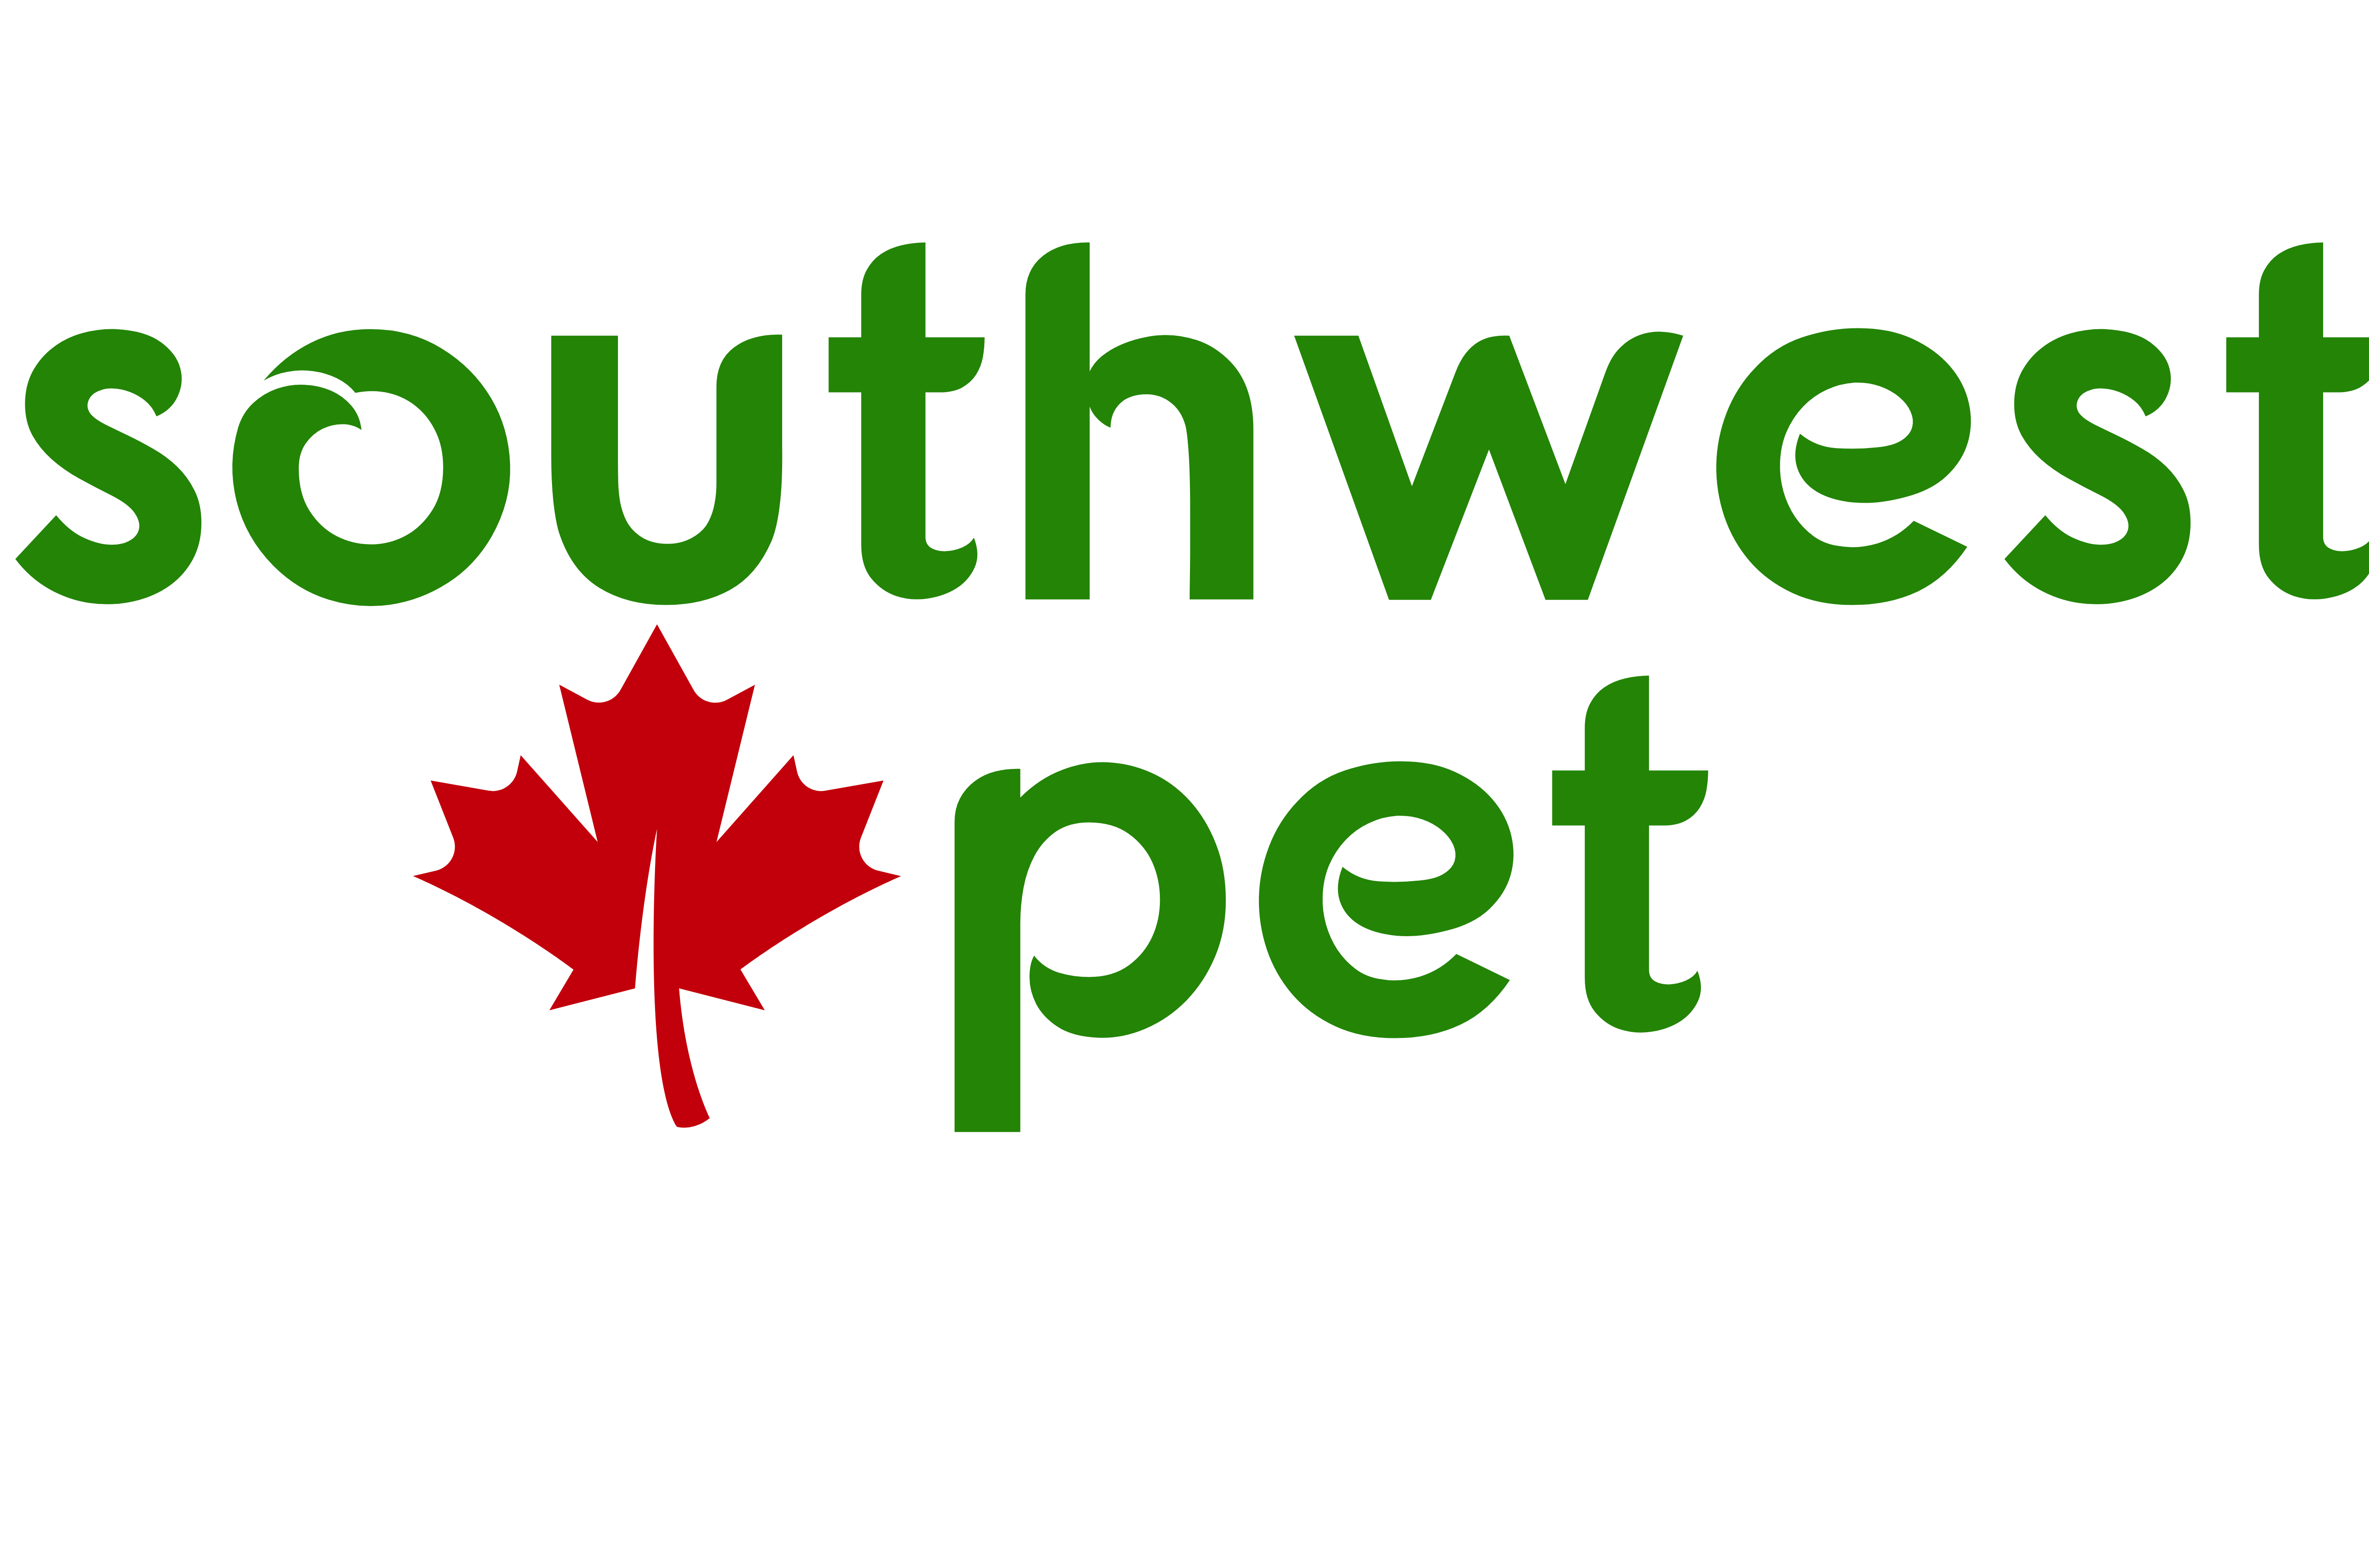 Southwest Pet - London's Premiere Pet Store